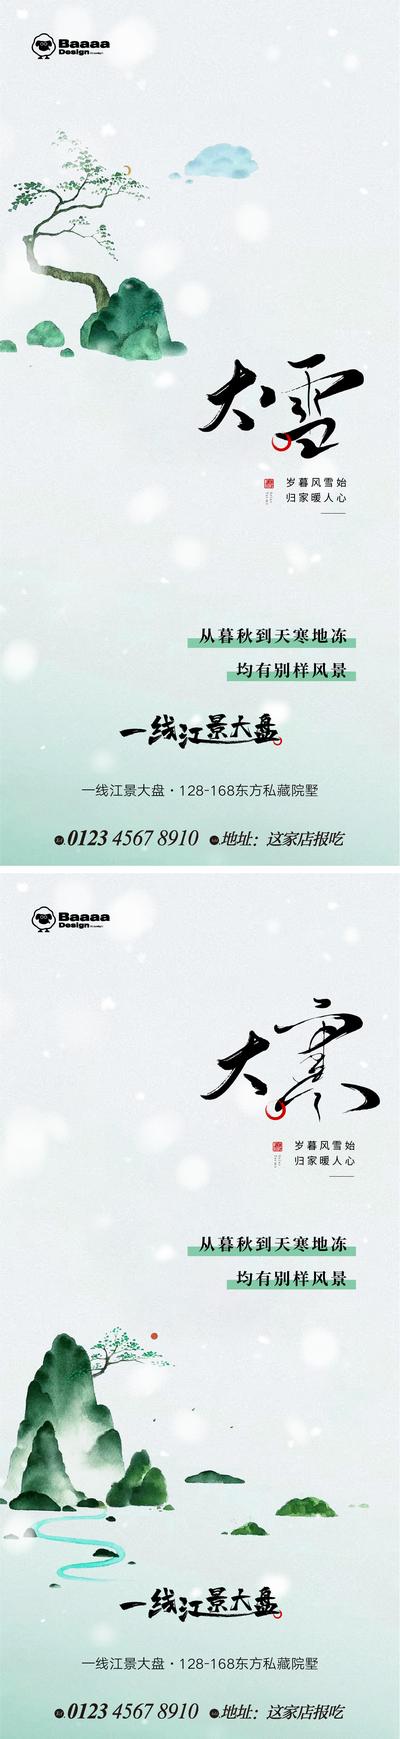 南门网 广告 中式 系列 大雪 小寒 大寒 雪 笔触 毛笔字 新中式 庭院 背景 大气 刷屏 价值